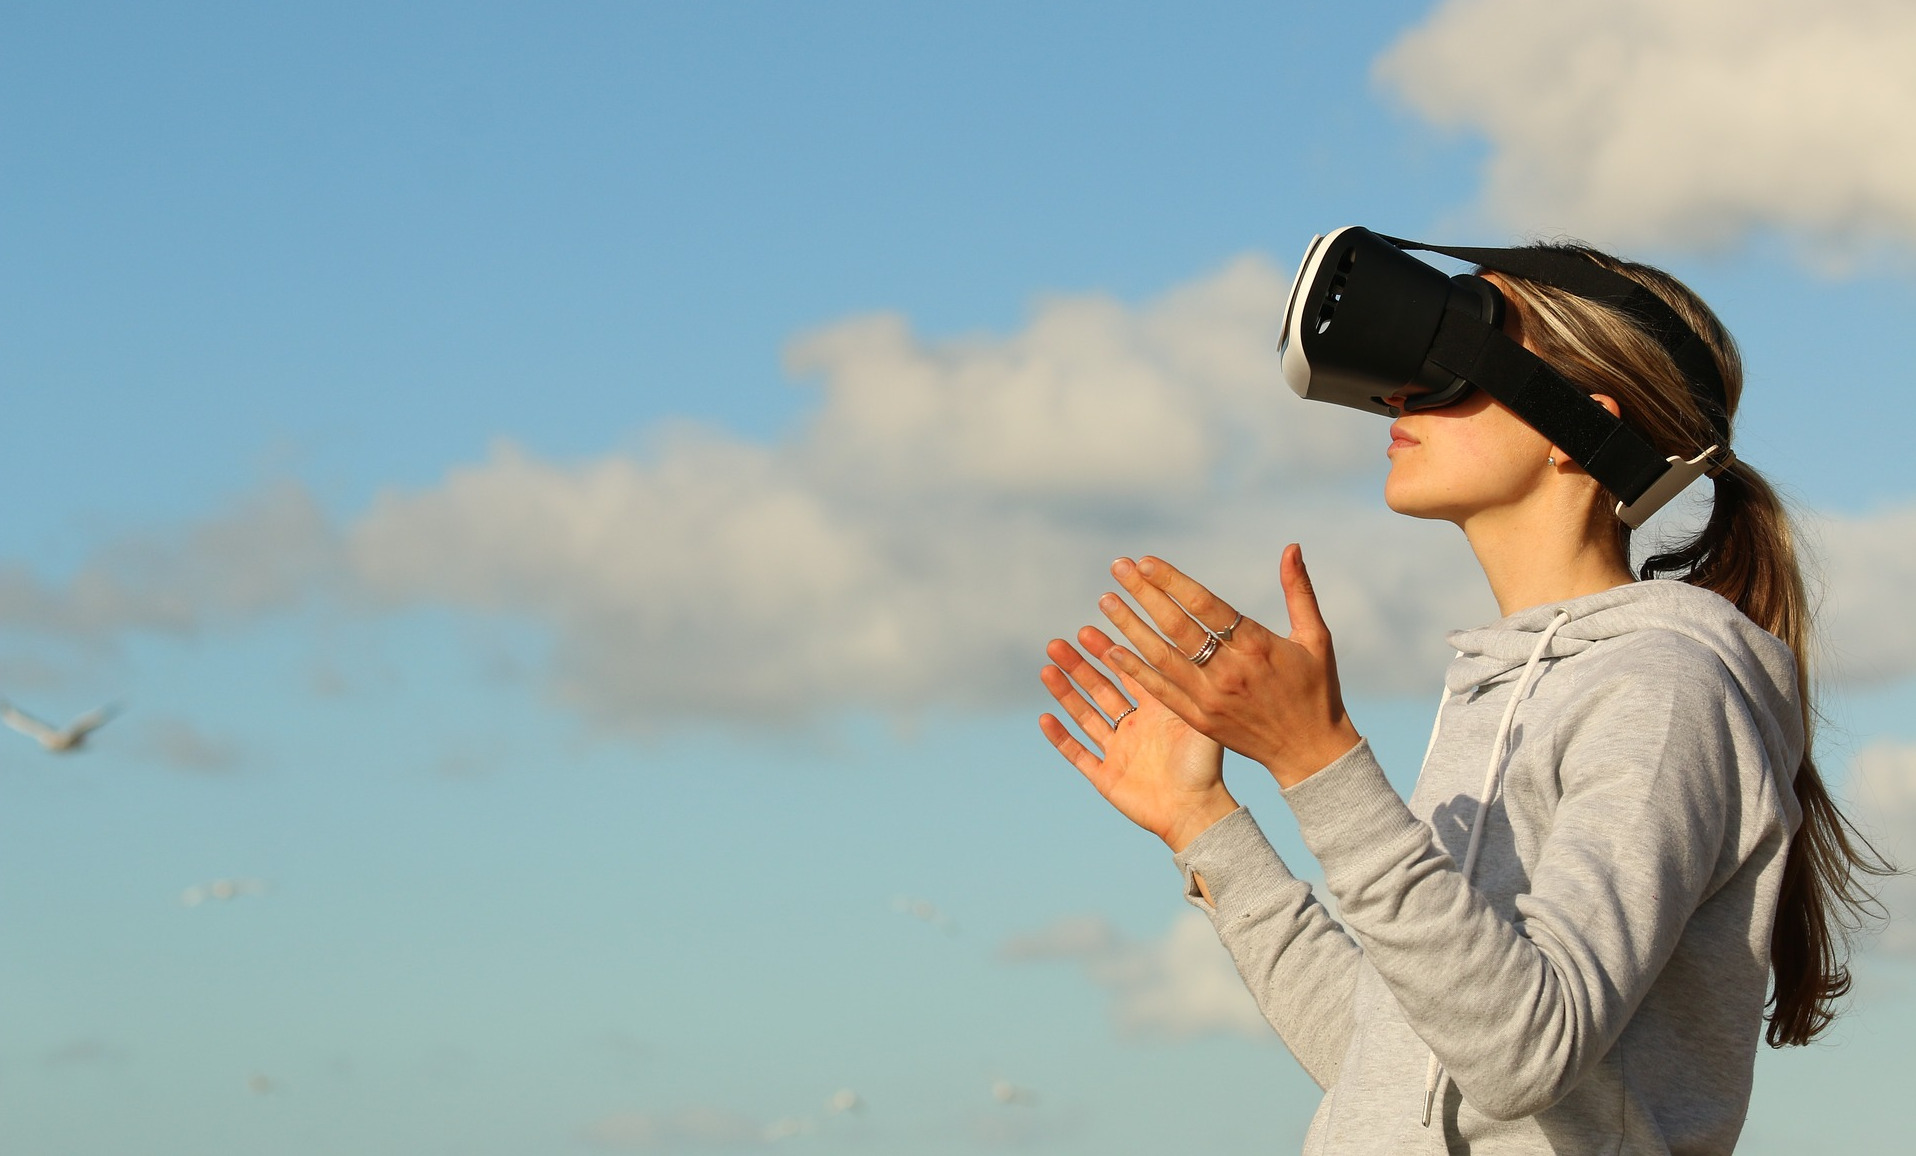 virtual reality technology